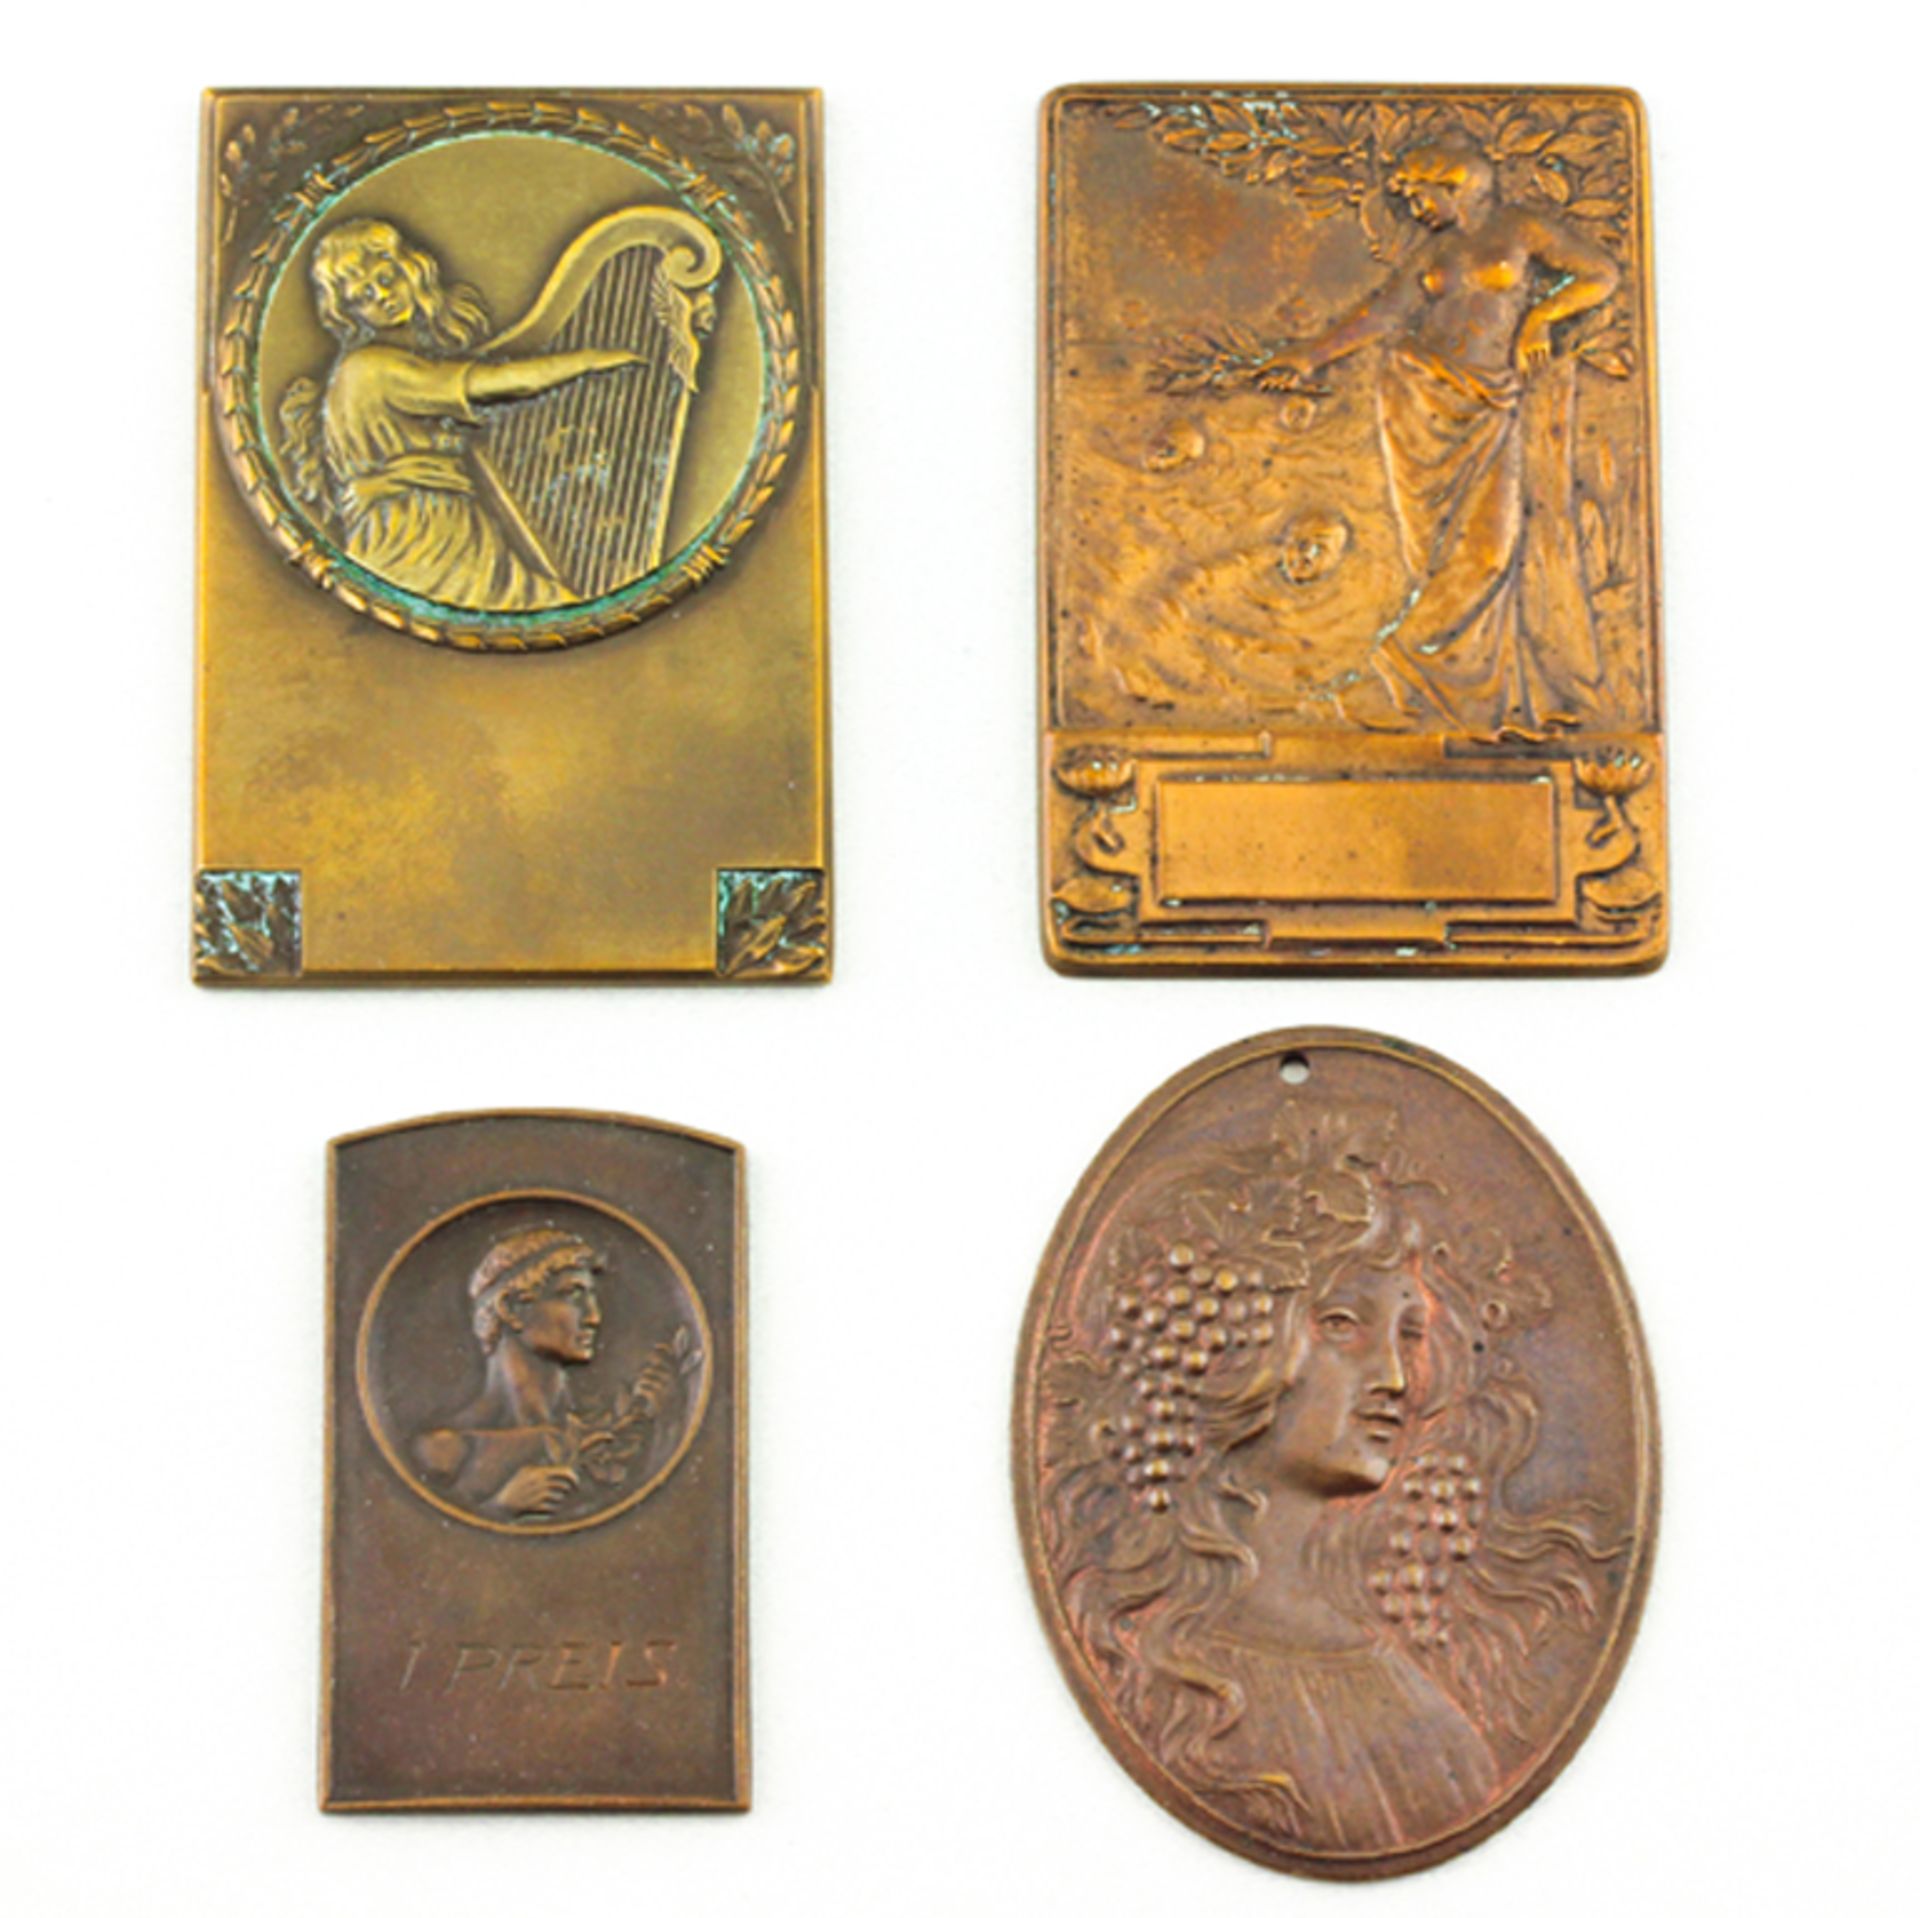 Vier Bronzeplaketten bzw. -medaillen. Unterschiedliche Reliefdarstellungen im Jugendstil, 2x mit